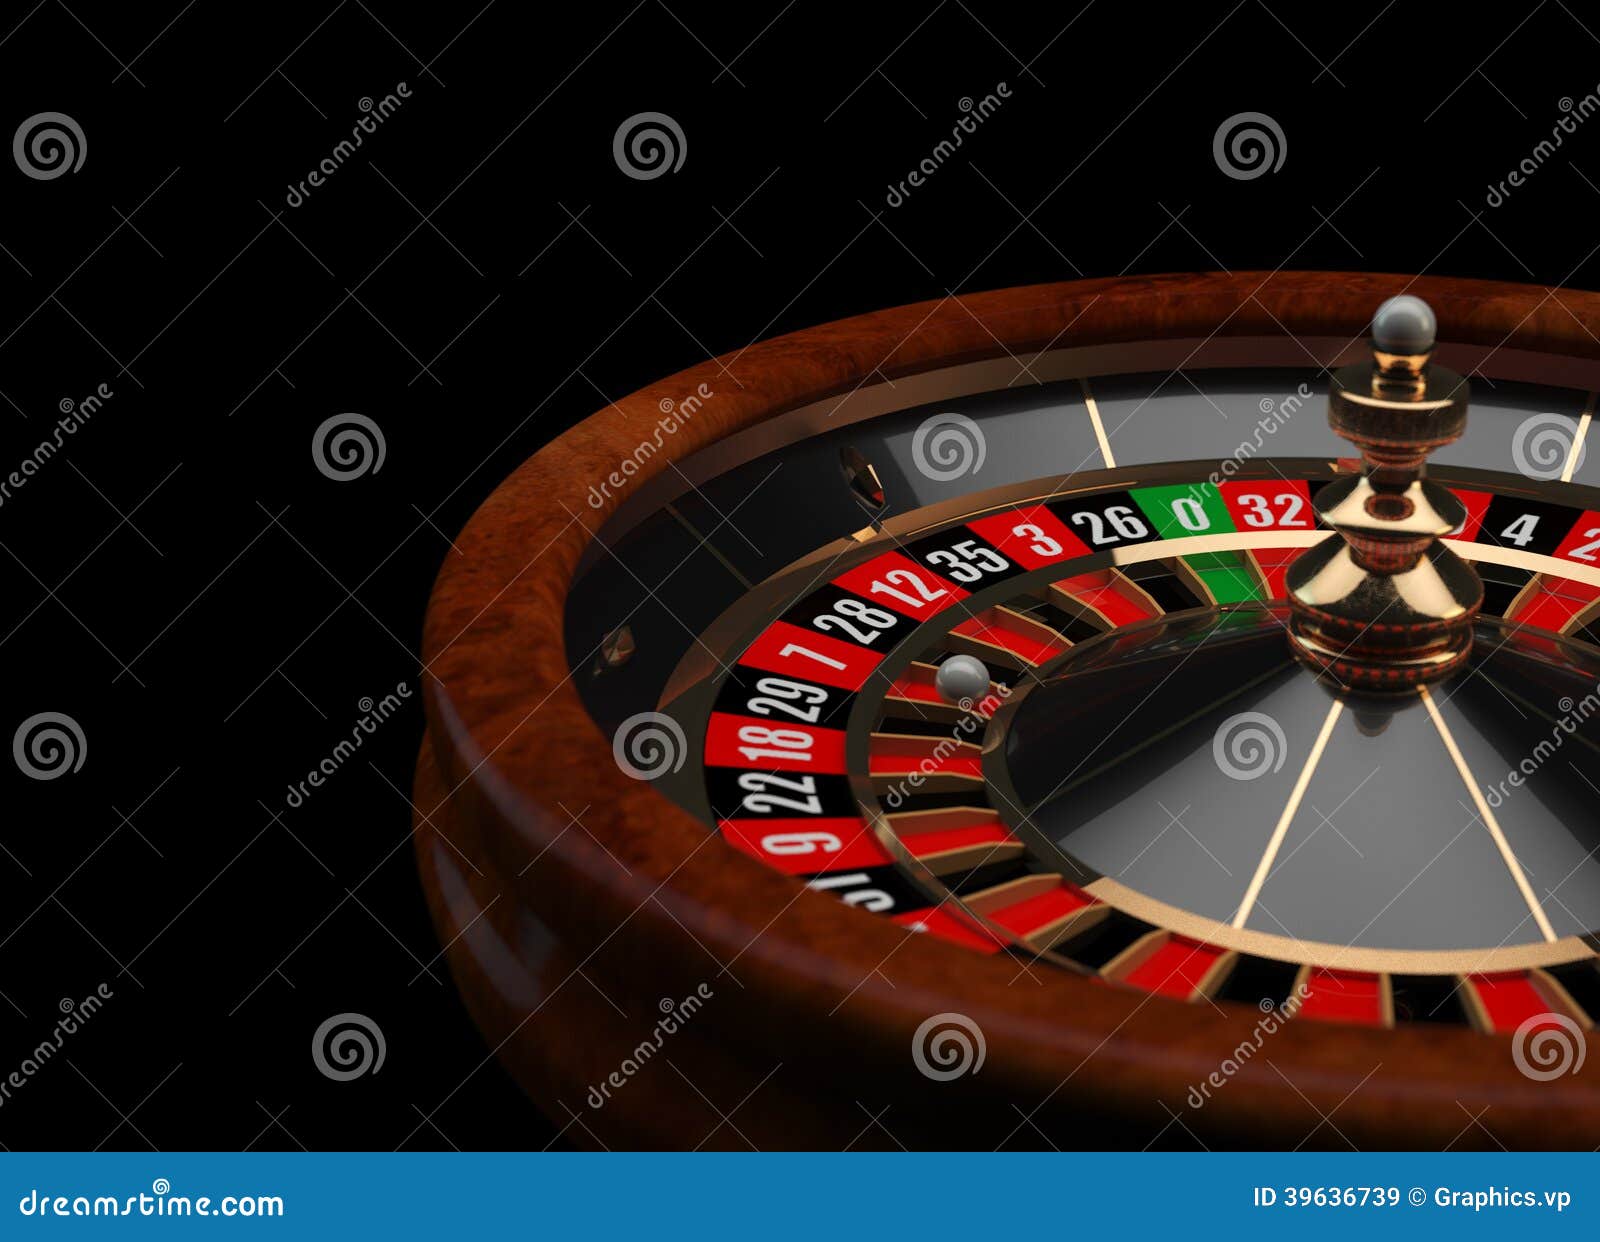 Spinner Wheel Roulette Stock Illustrations – 25 Spinner Wheel Roulette  Stock Illustrations, Vectors & Clipart - Dreamstime